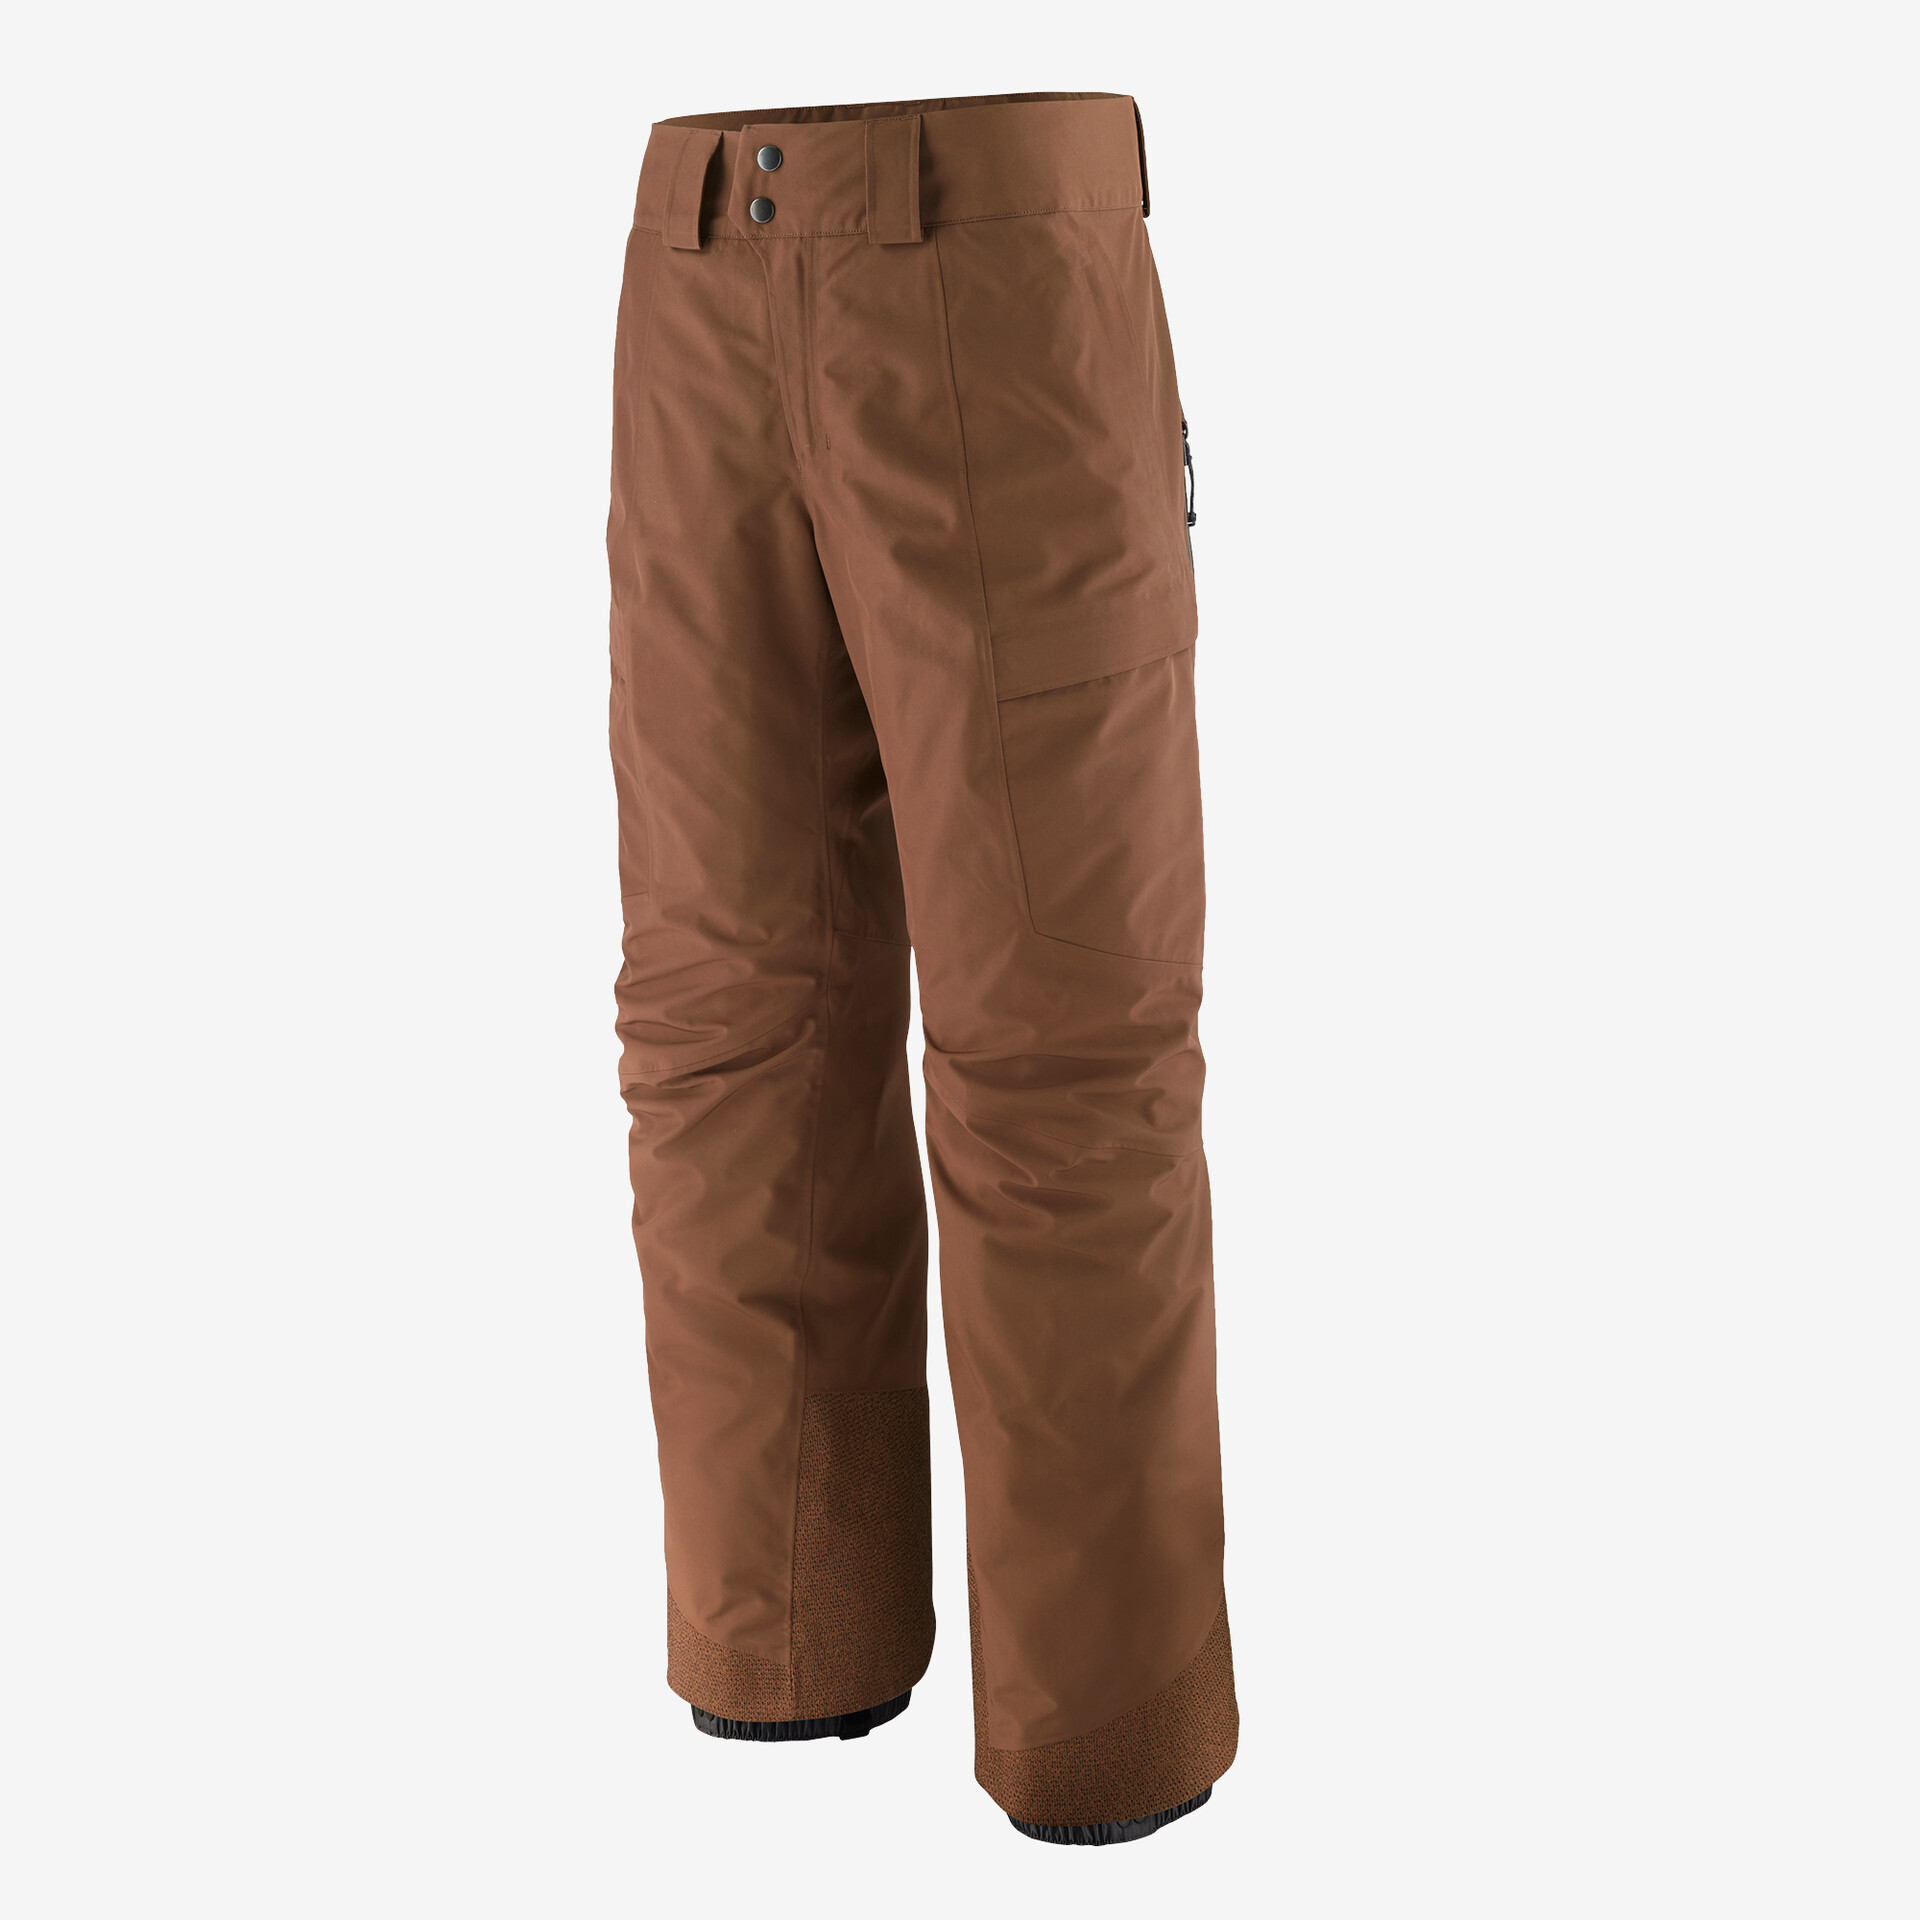 Мужские брюки Storm Shift Patagonia, мус коричневый мужские брюки storm shift patagonia зеленый